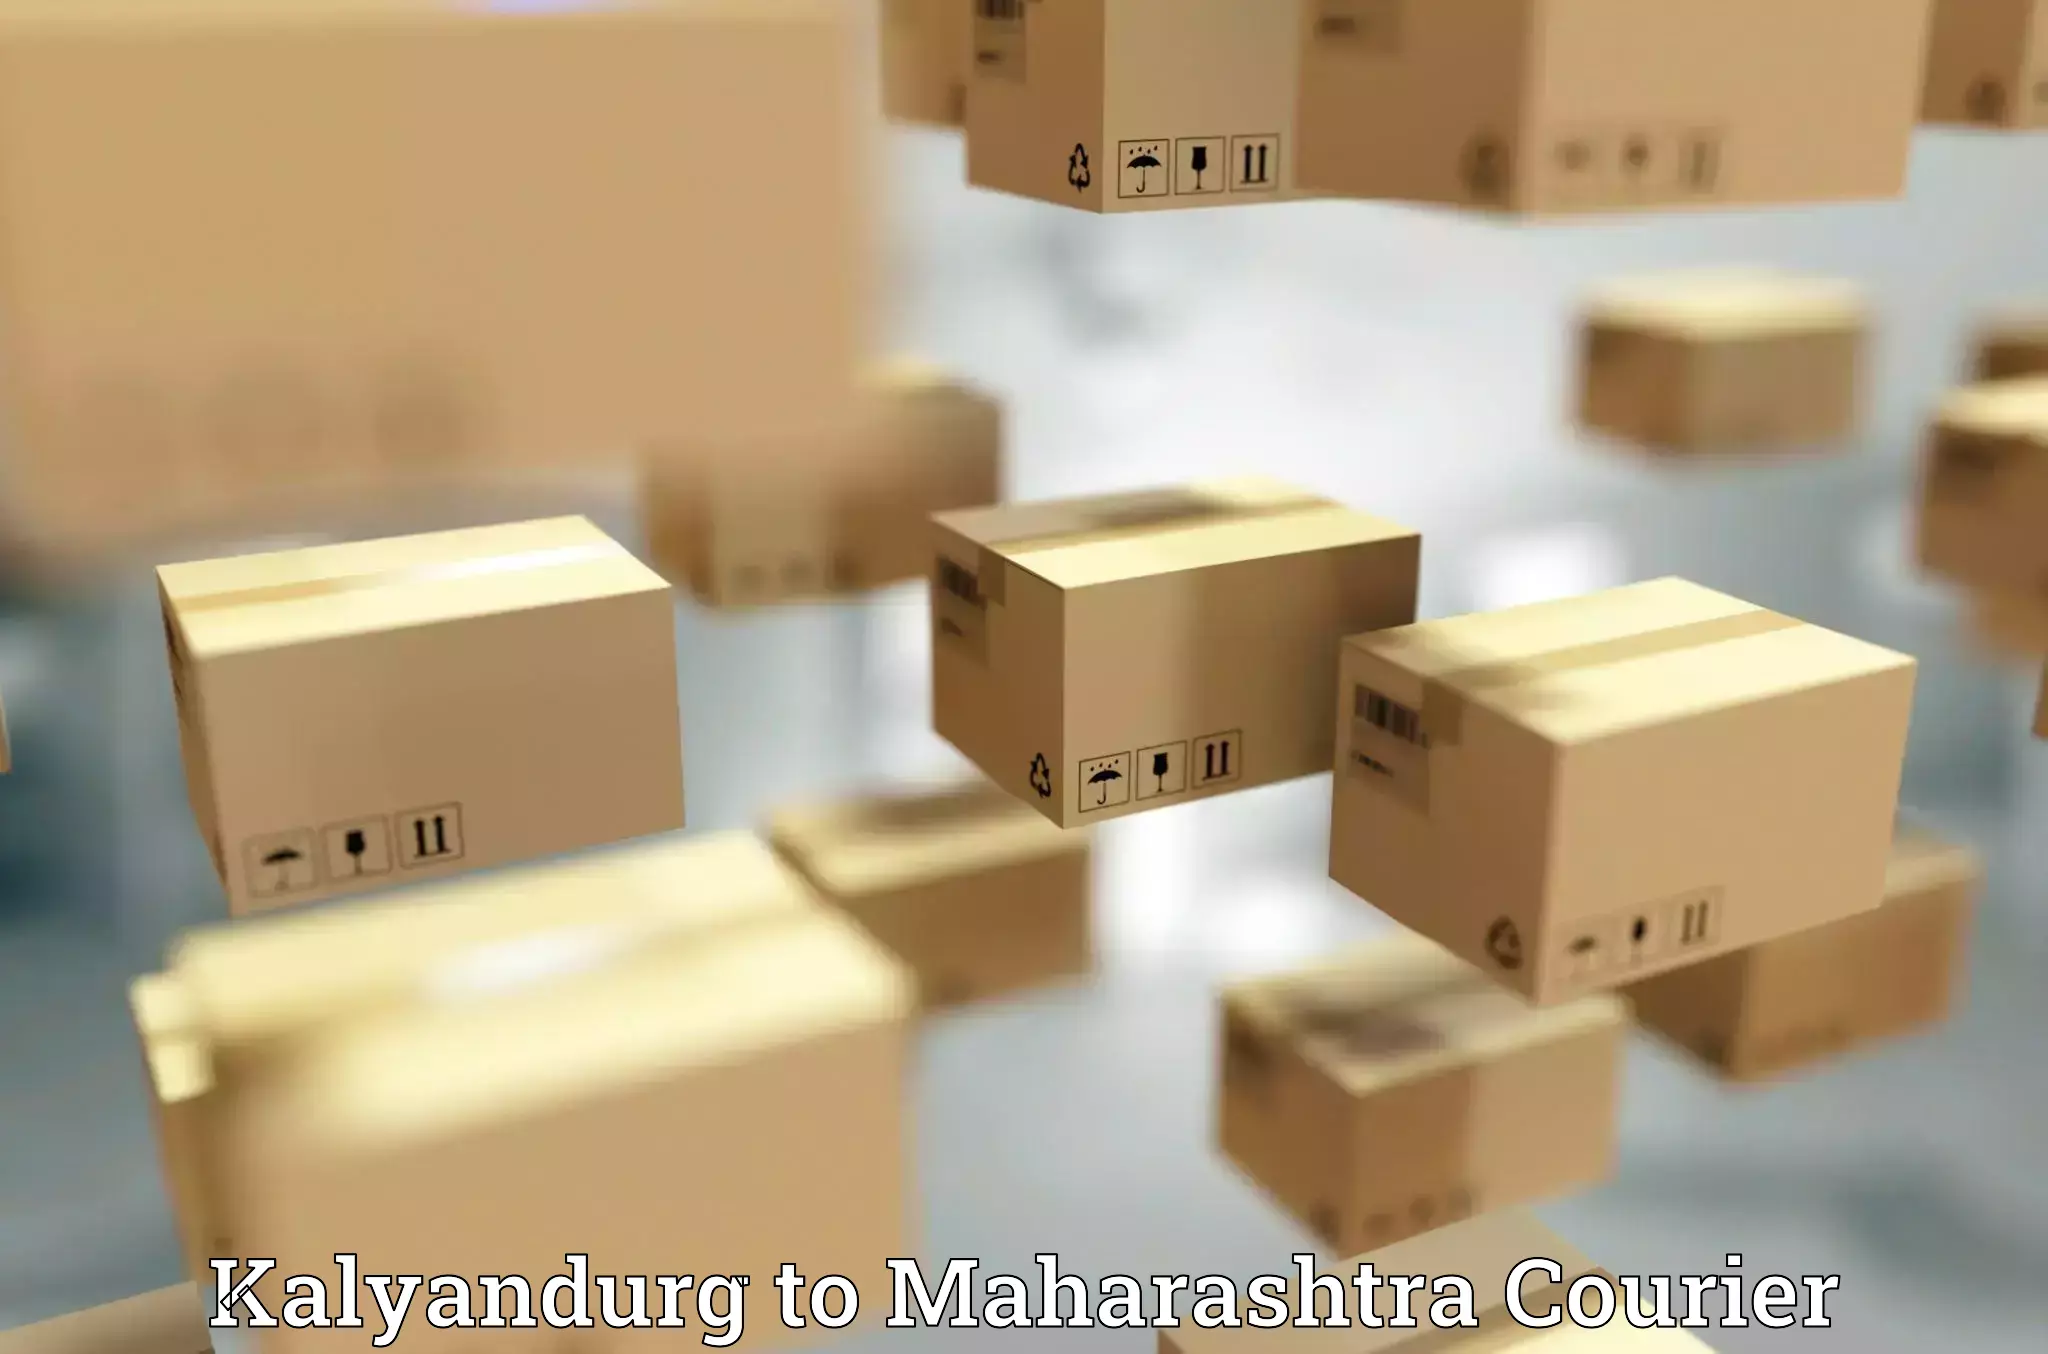 Supply chain efficiency Kalyandurg to Raigarh Maharashtra